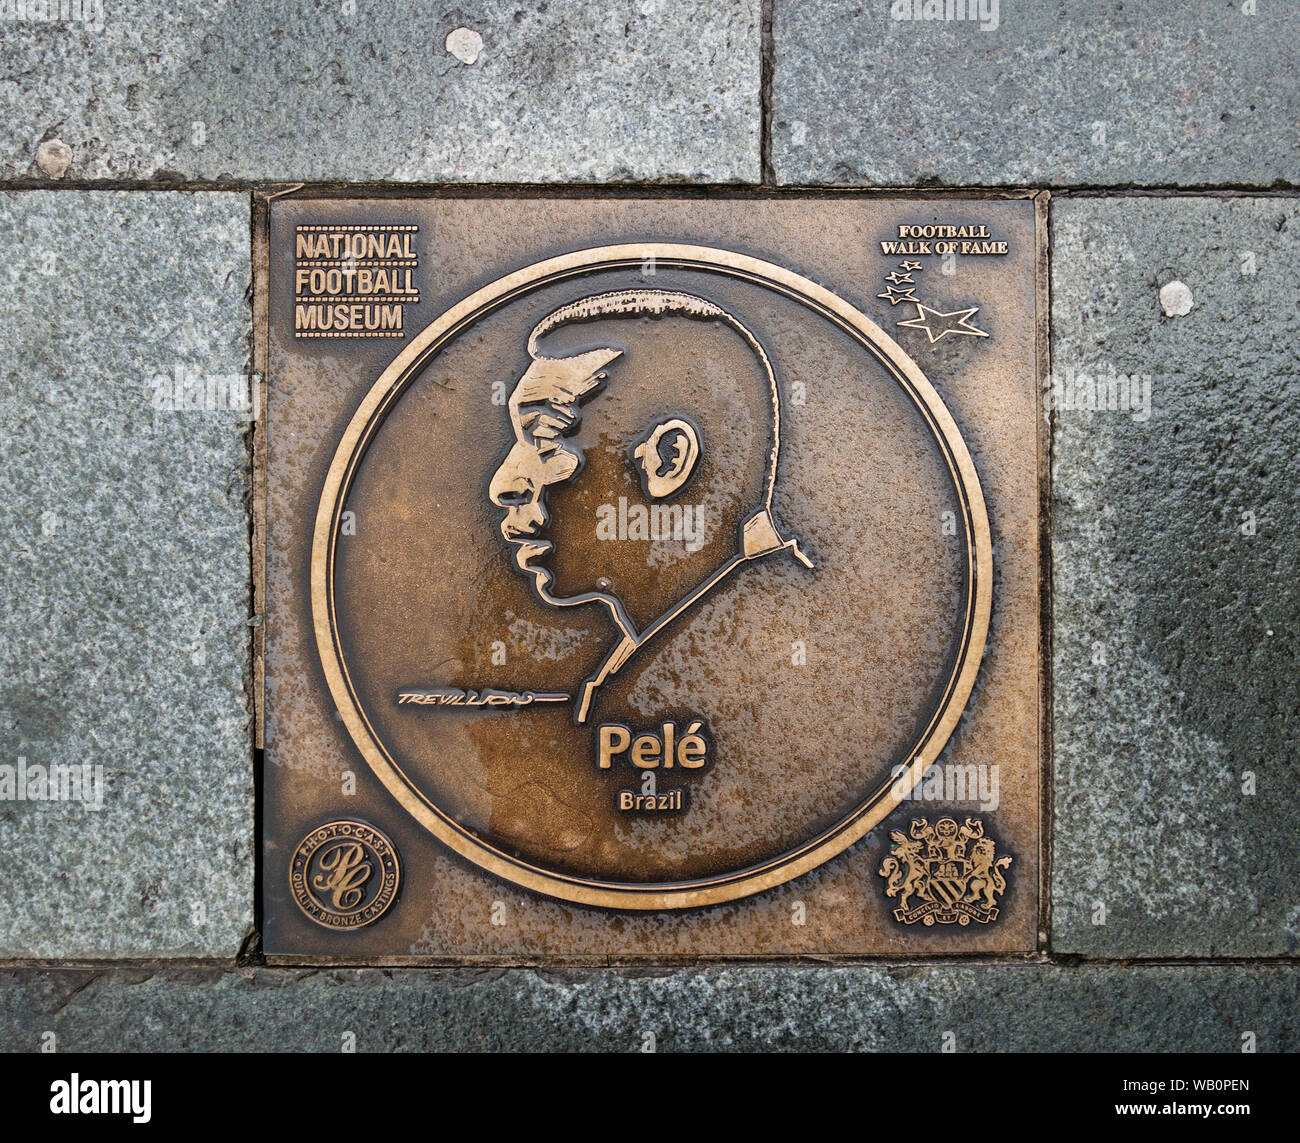 Bronzetafel der brasilianischen Fußballspieler Pelé auf der Fußball Walk of Fame an die National Football Museum in Manchester, England, Großbritannien Stockfoto